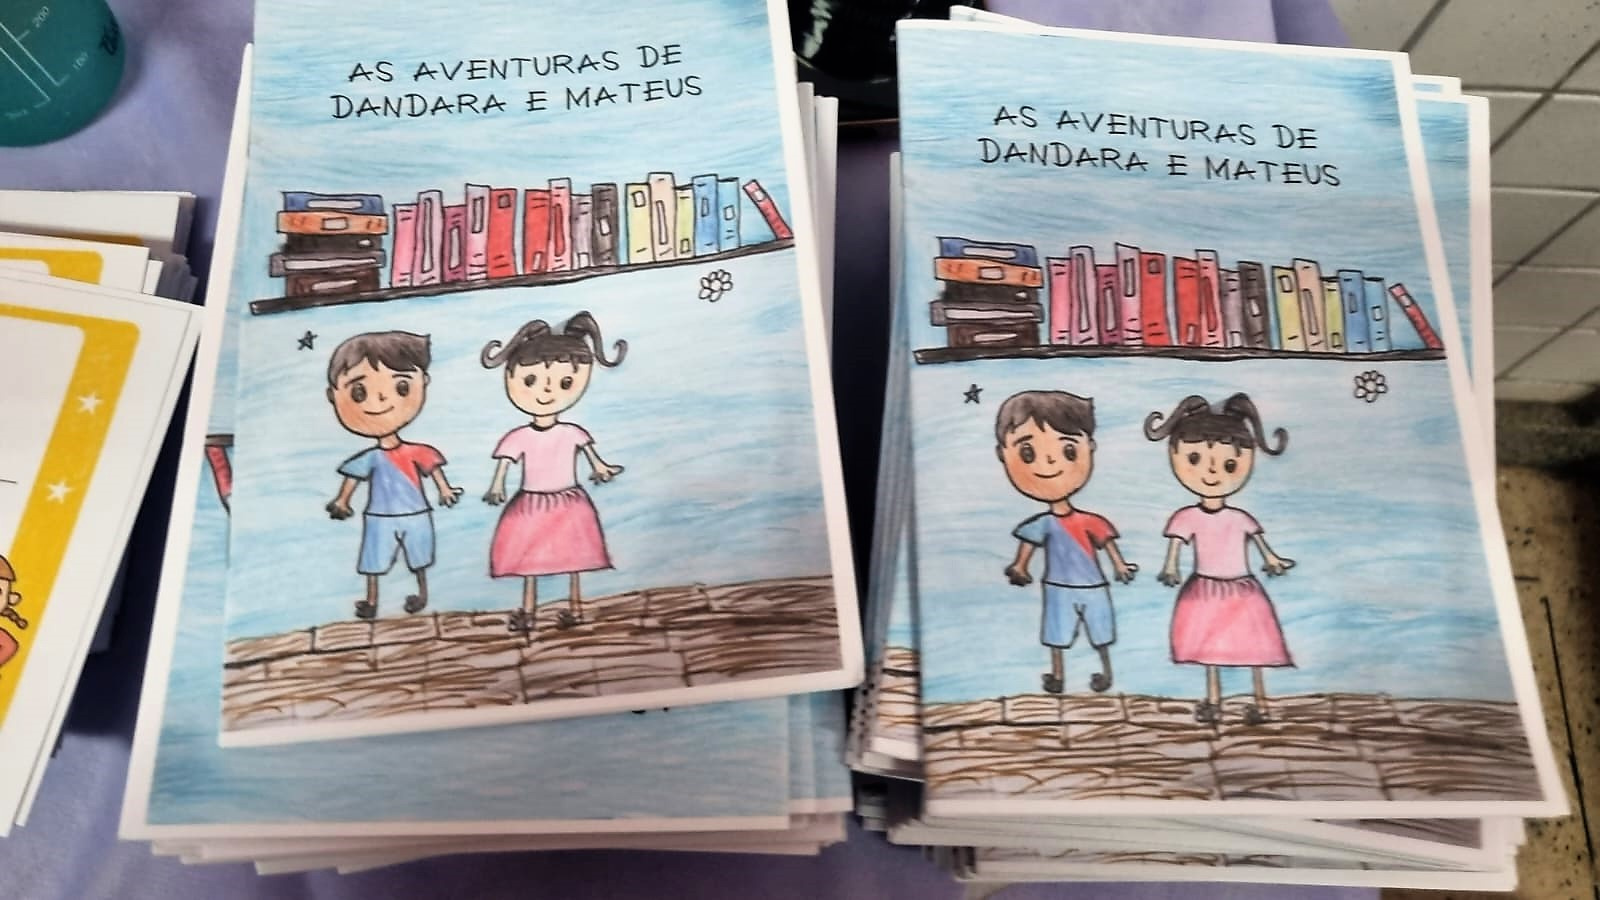 Crianças mágicas: clube da leitura encanta estudantes em escola de Itararé  – Prefeitura de Vitória